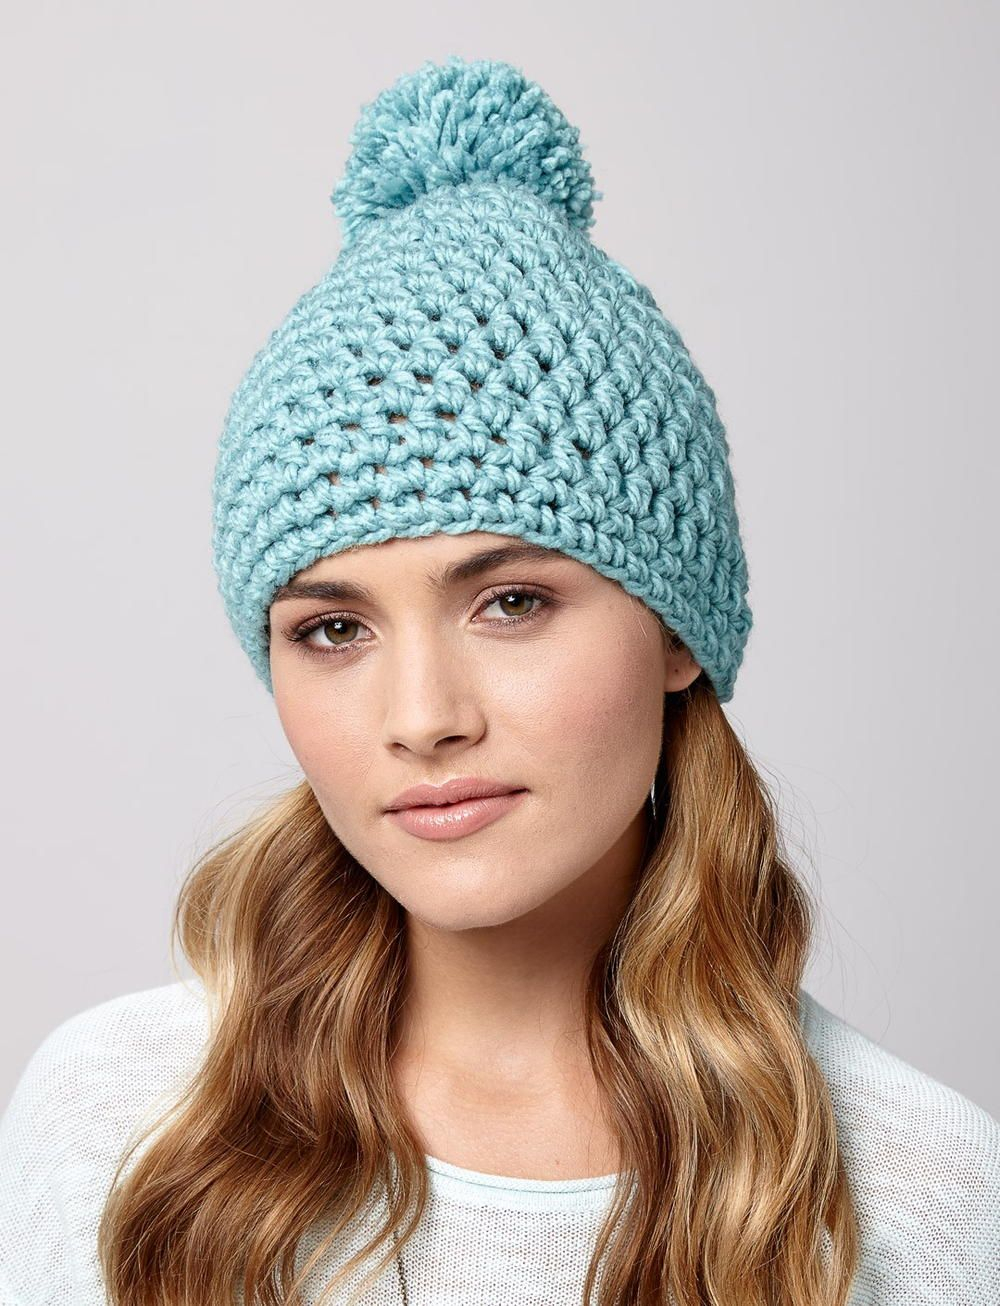 Bulky Yarn Crochet Hat Pattern Snow Drift Crochet Hat Crochet Gleanings Clothes Pinterest